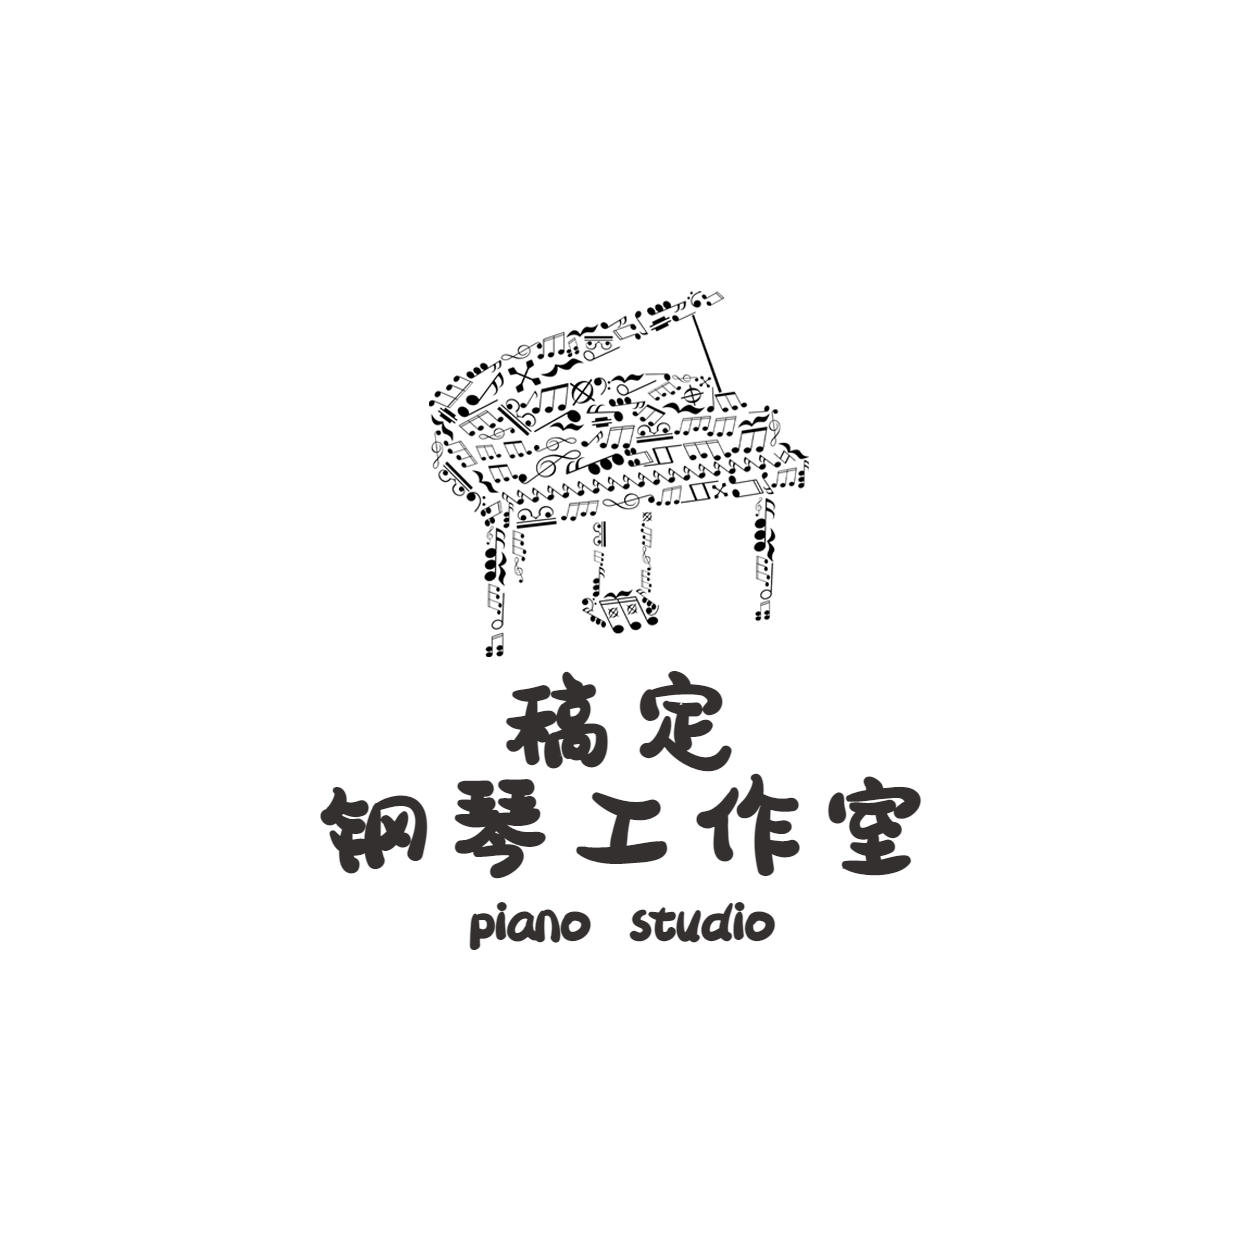 钢琴音乐工作室logo预览效果